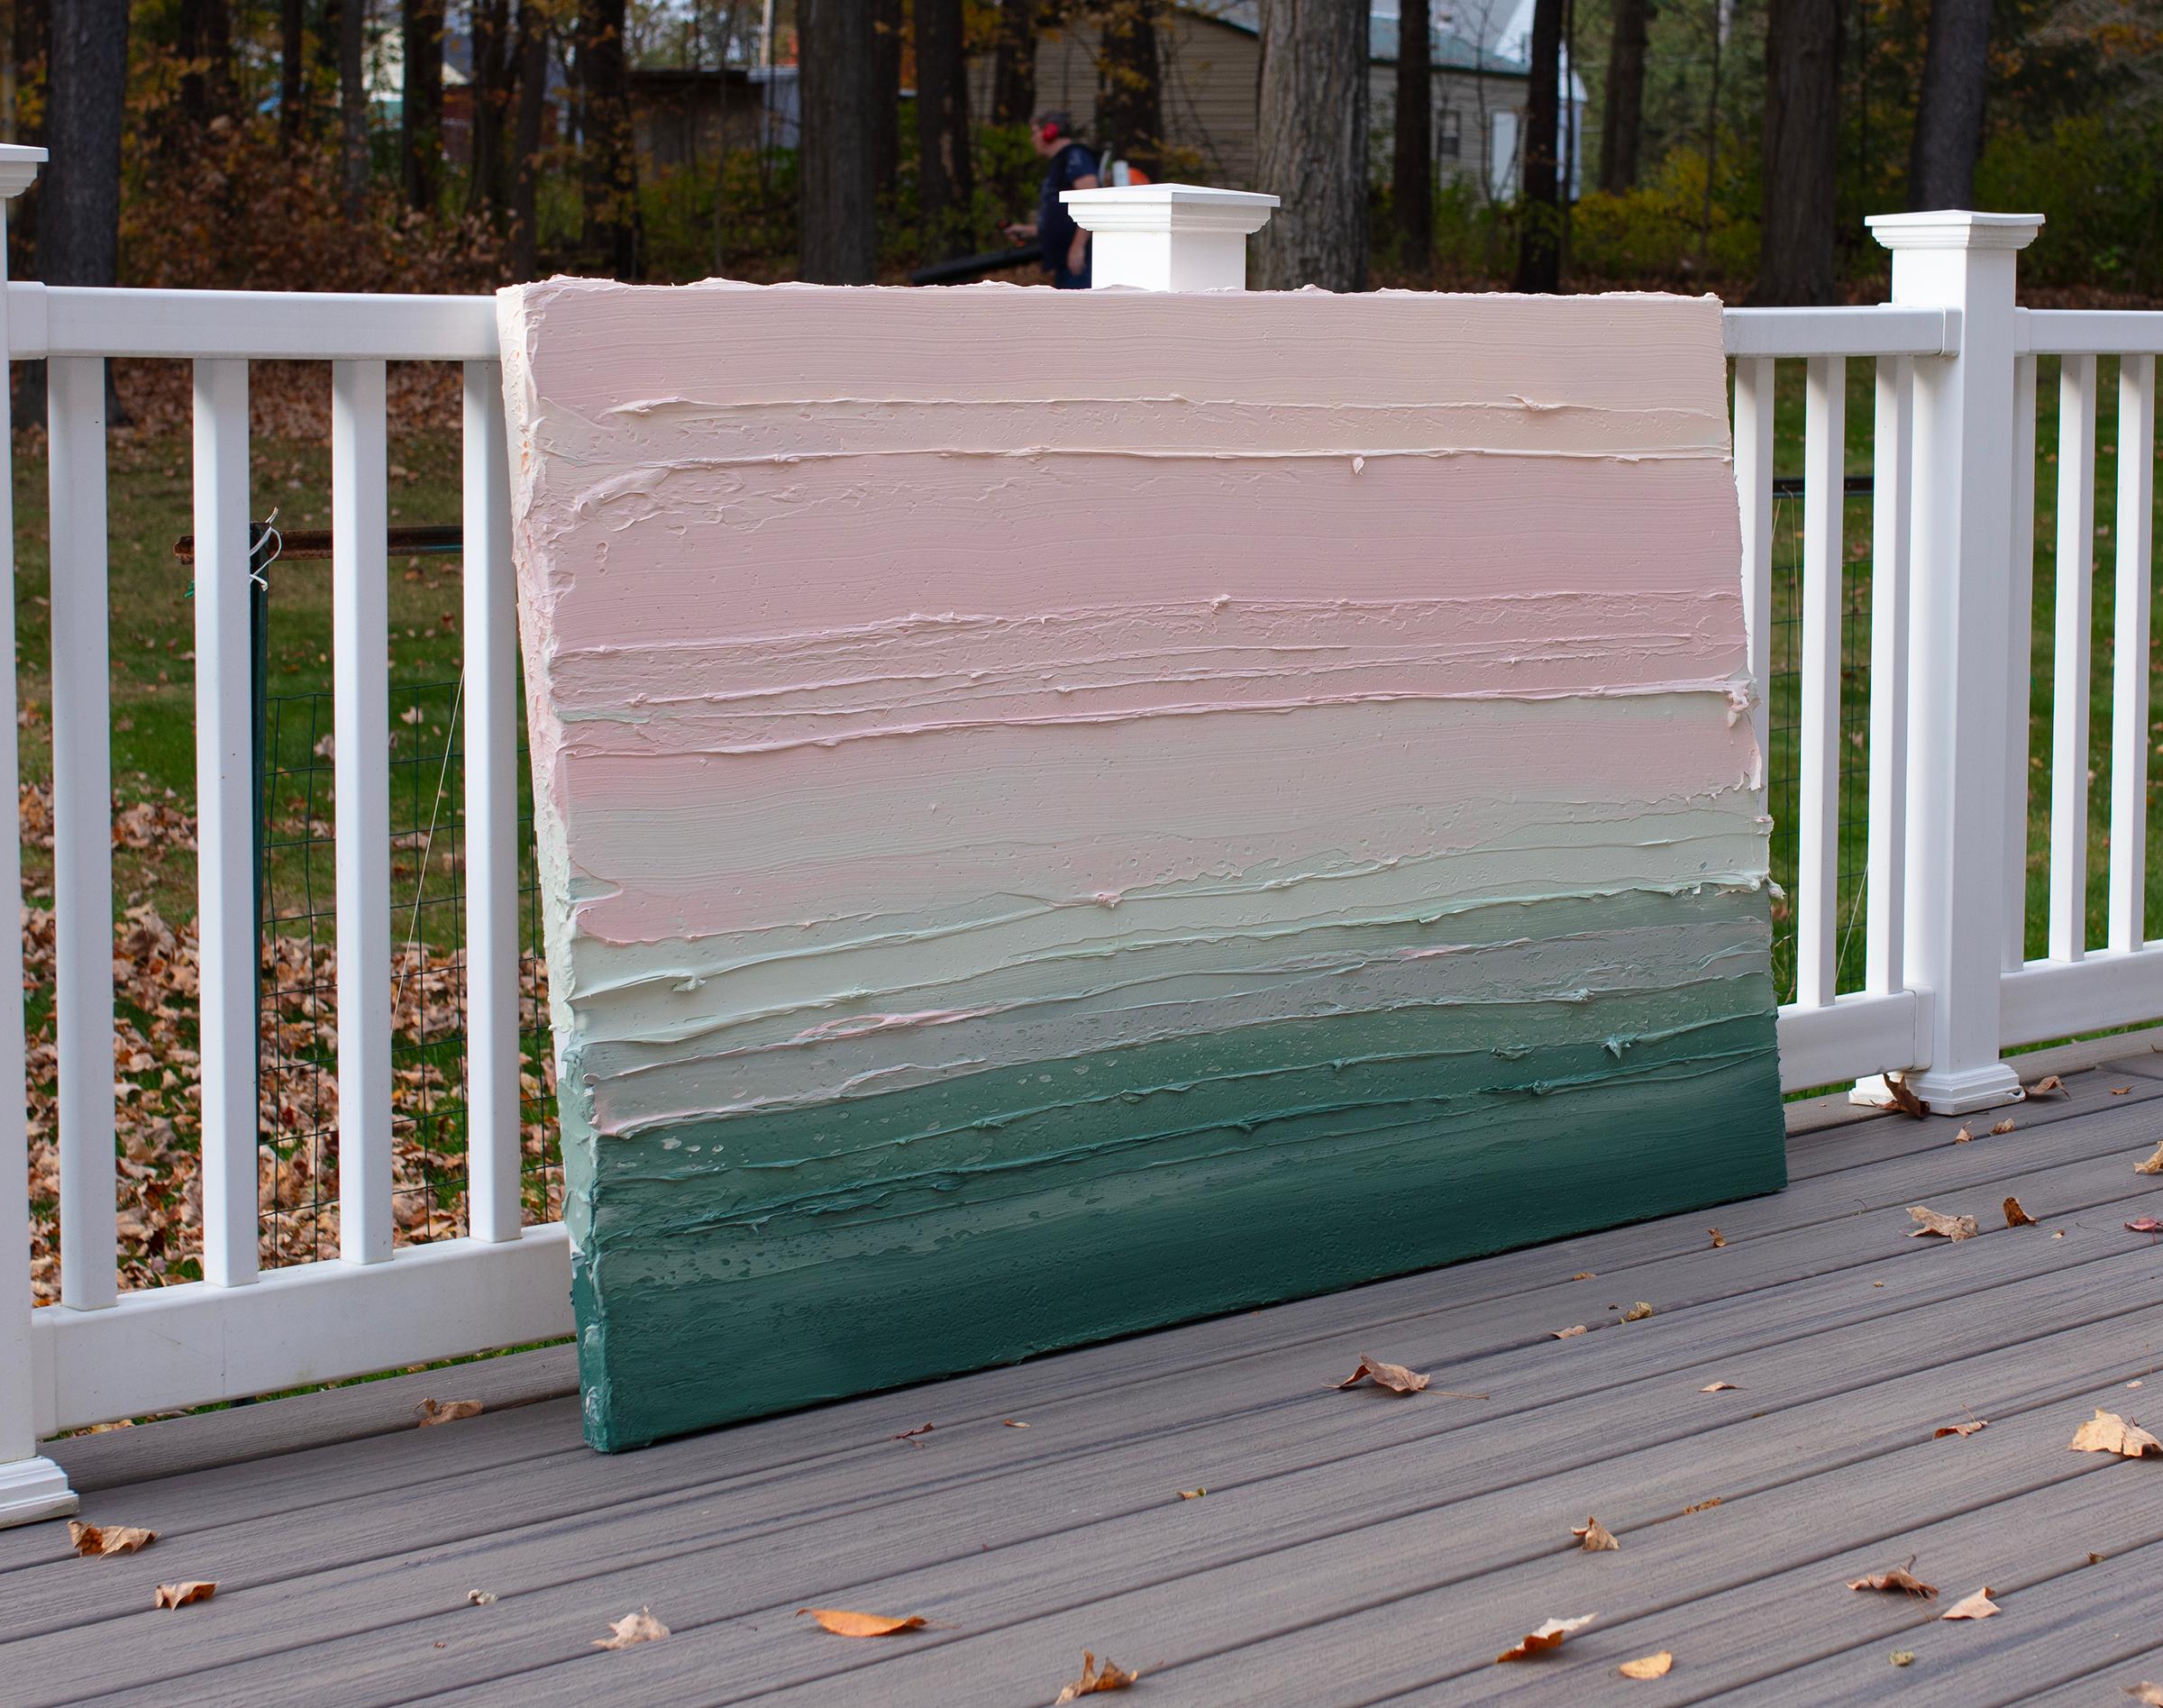 Cette peinture abstraite de Teodora Guererra présente une palette de vert profond et de rose clair. L'artiste applique d'épaisses touches de peinture à l'aide d'un couteau à palette, en larges coups de pinceau horizontaux, sur une toile emballée,